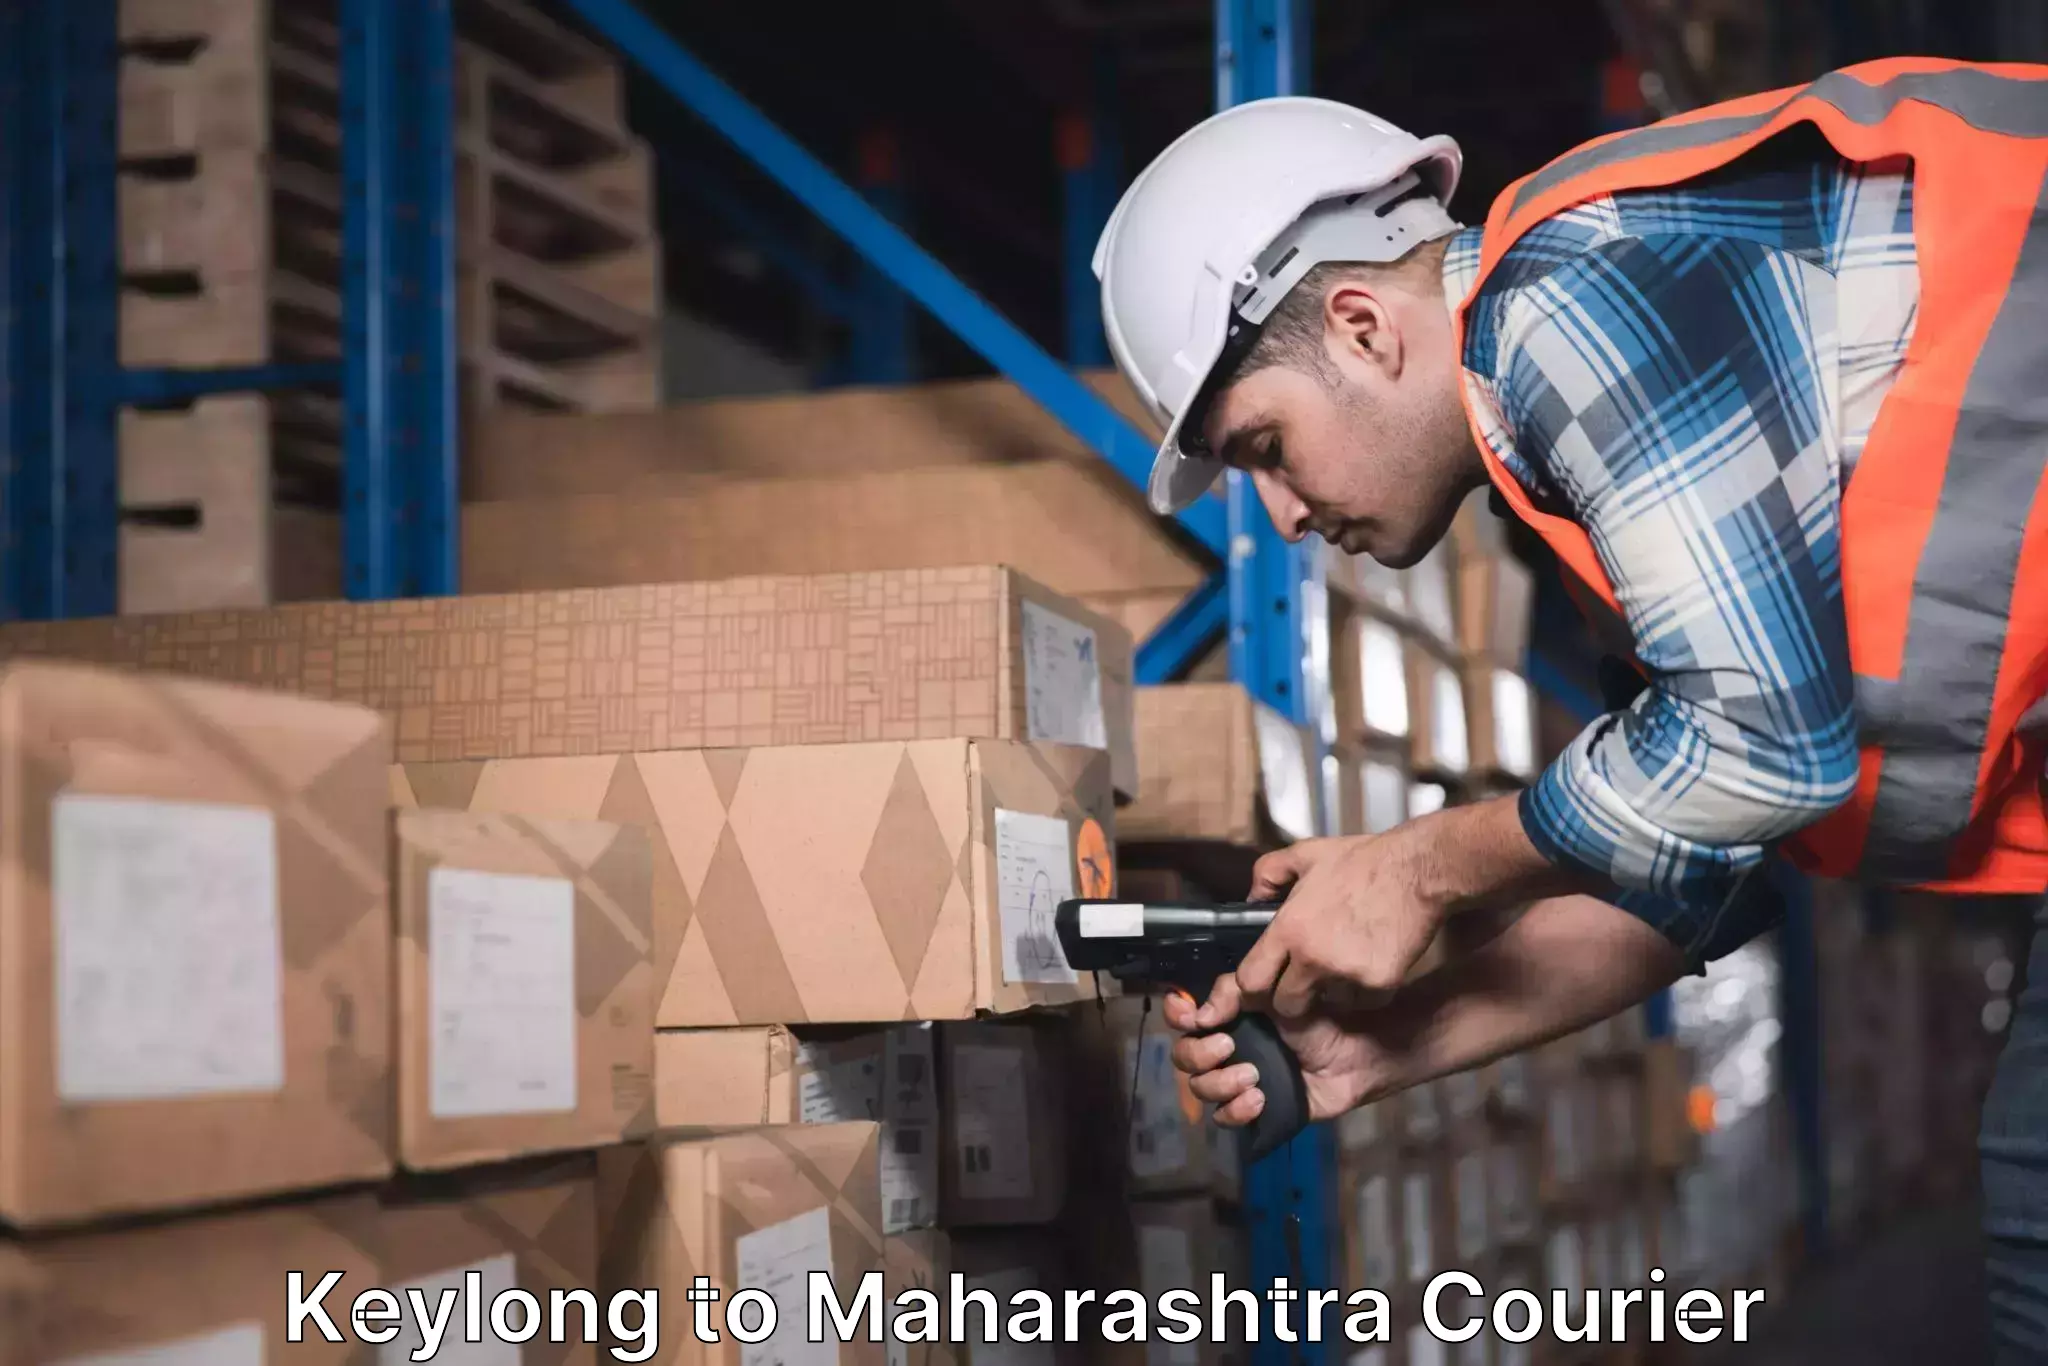 Express courier capabilities in Keylong to Maharashtra